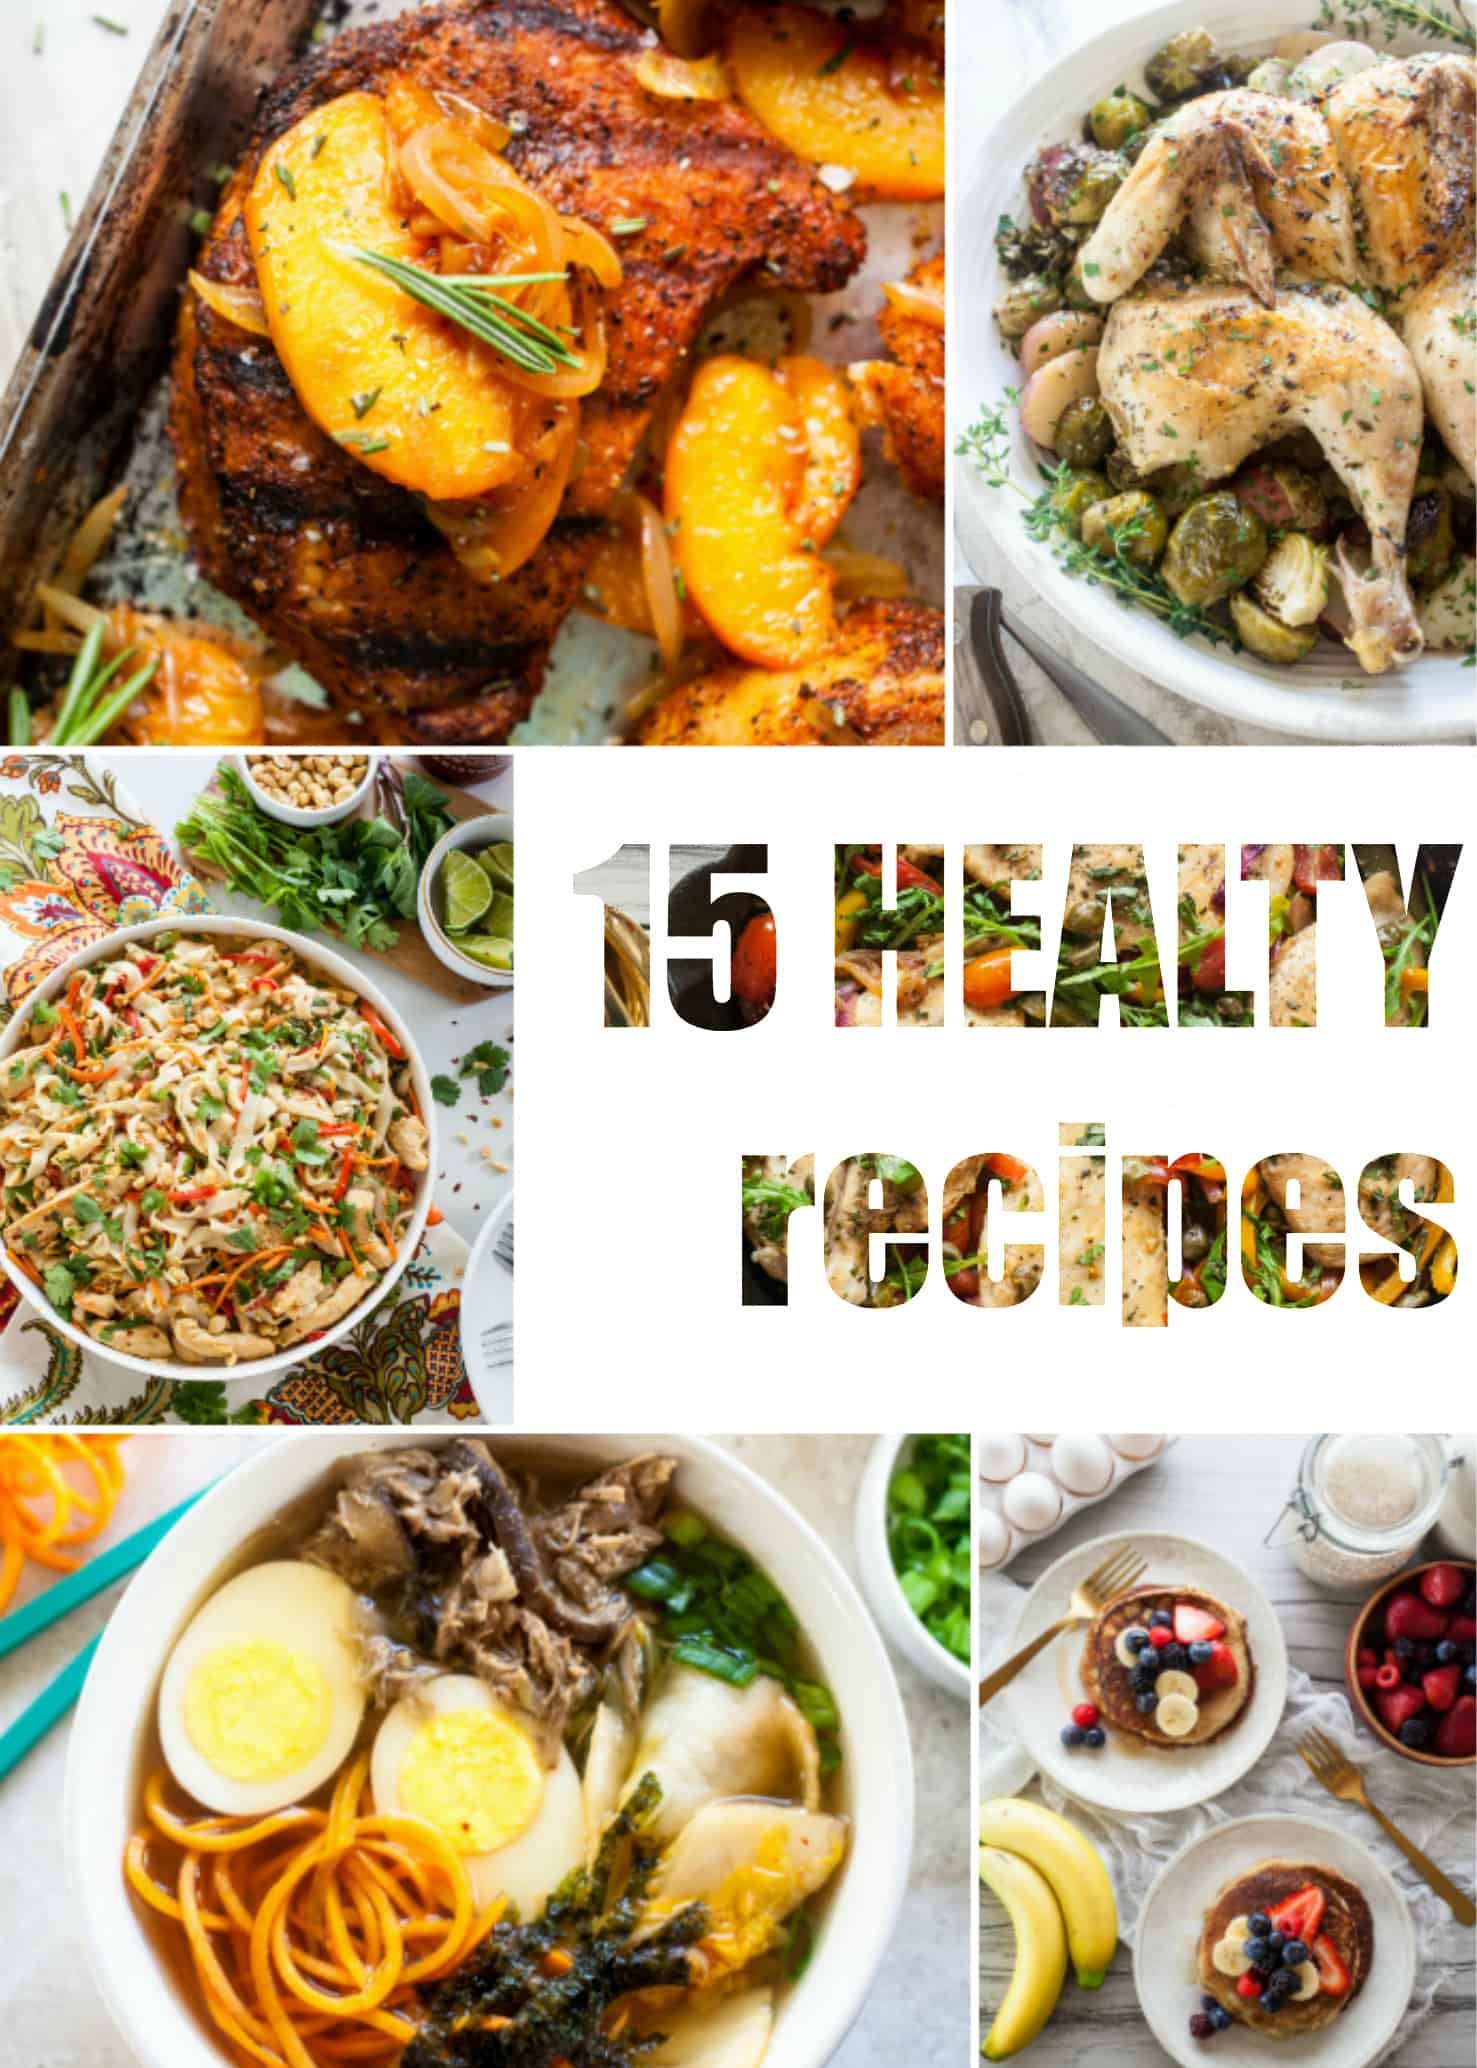 15 Healthy Recipes - The Noshery